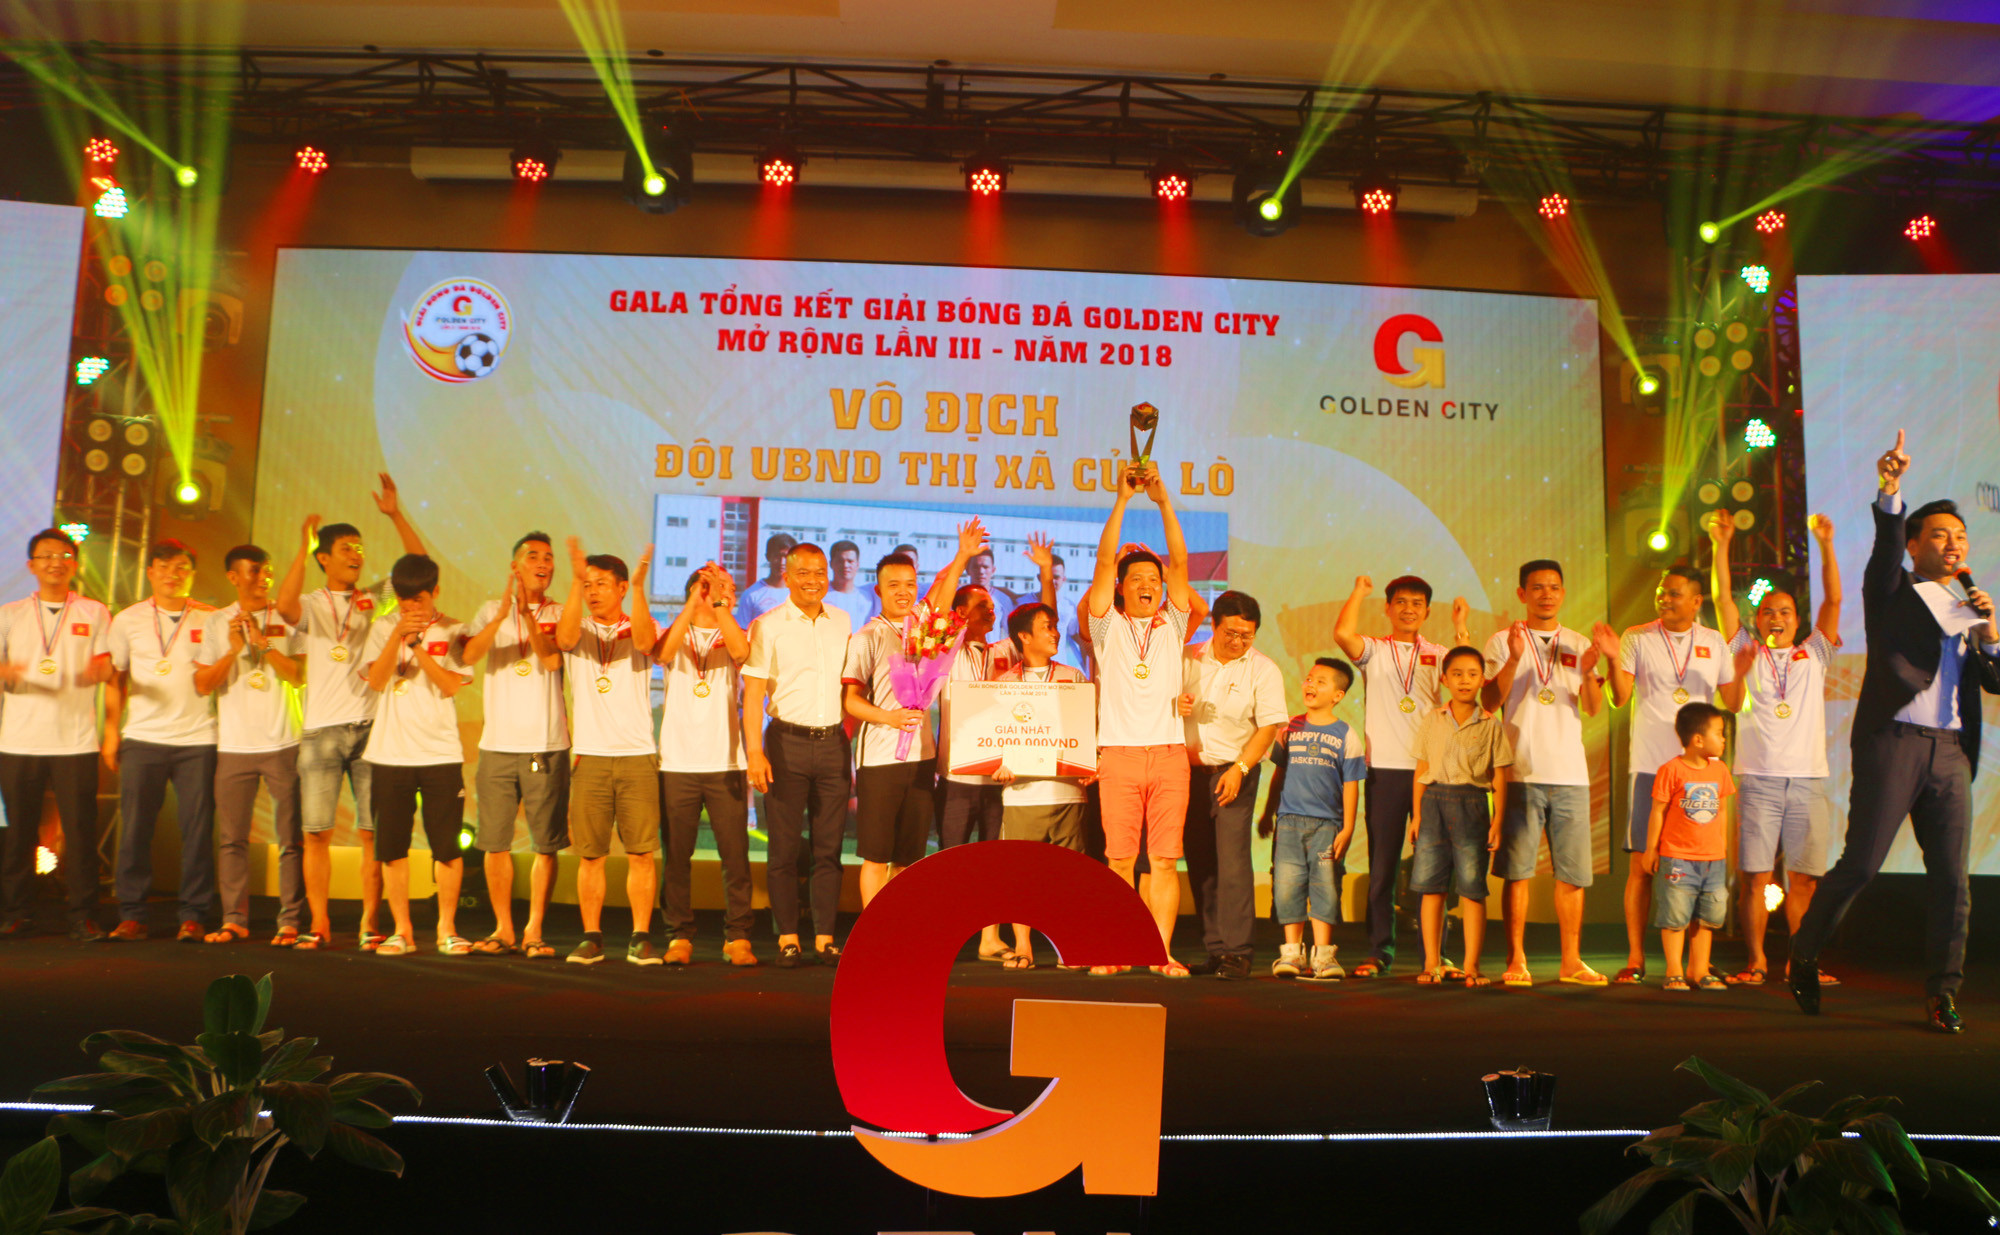 Đại diện Ban tổ chức giải trao Cúp Vô địch cho đội bóng UBND Thị xã Cửa Lò. Ảnh: Nguyễn Hải